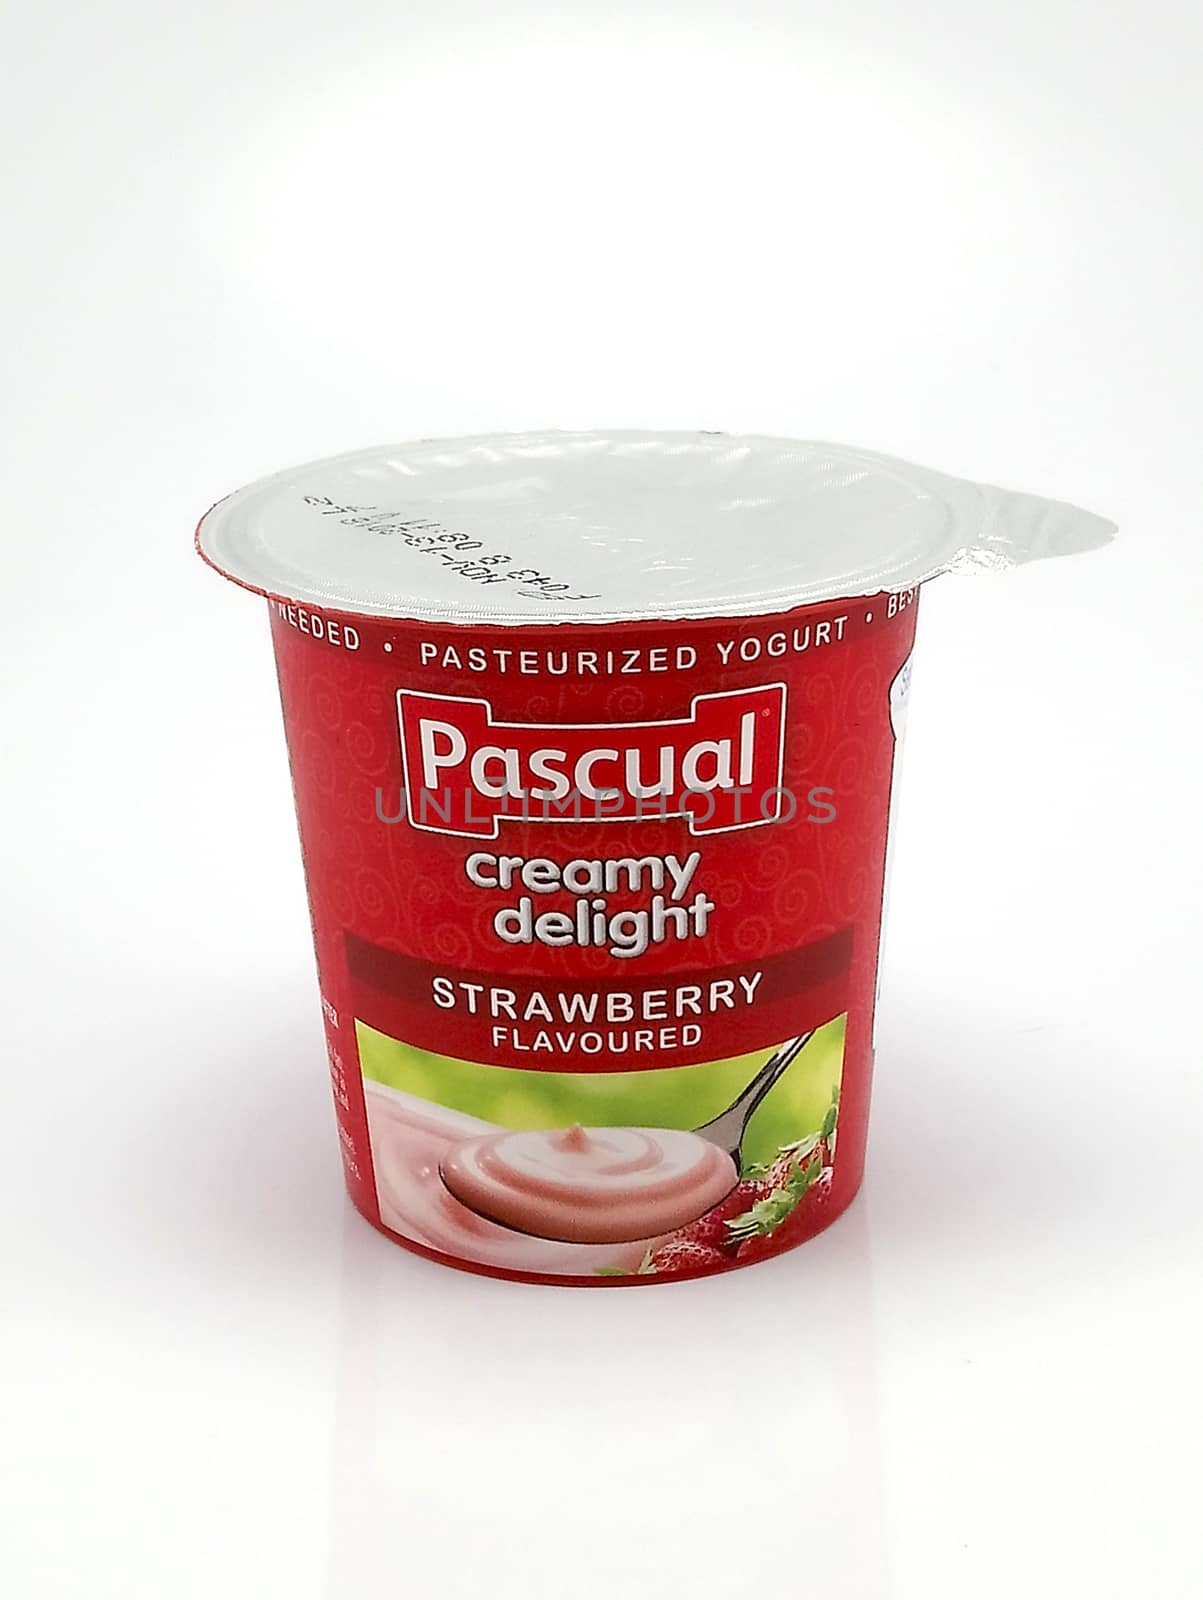 Pascual creamy delight strawberry flavor yogurt in Manila, Phili by imwaltersy